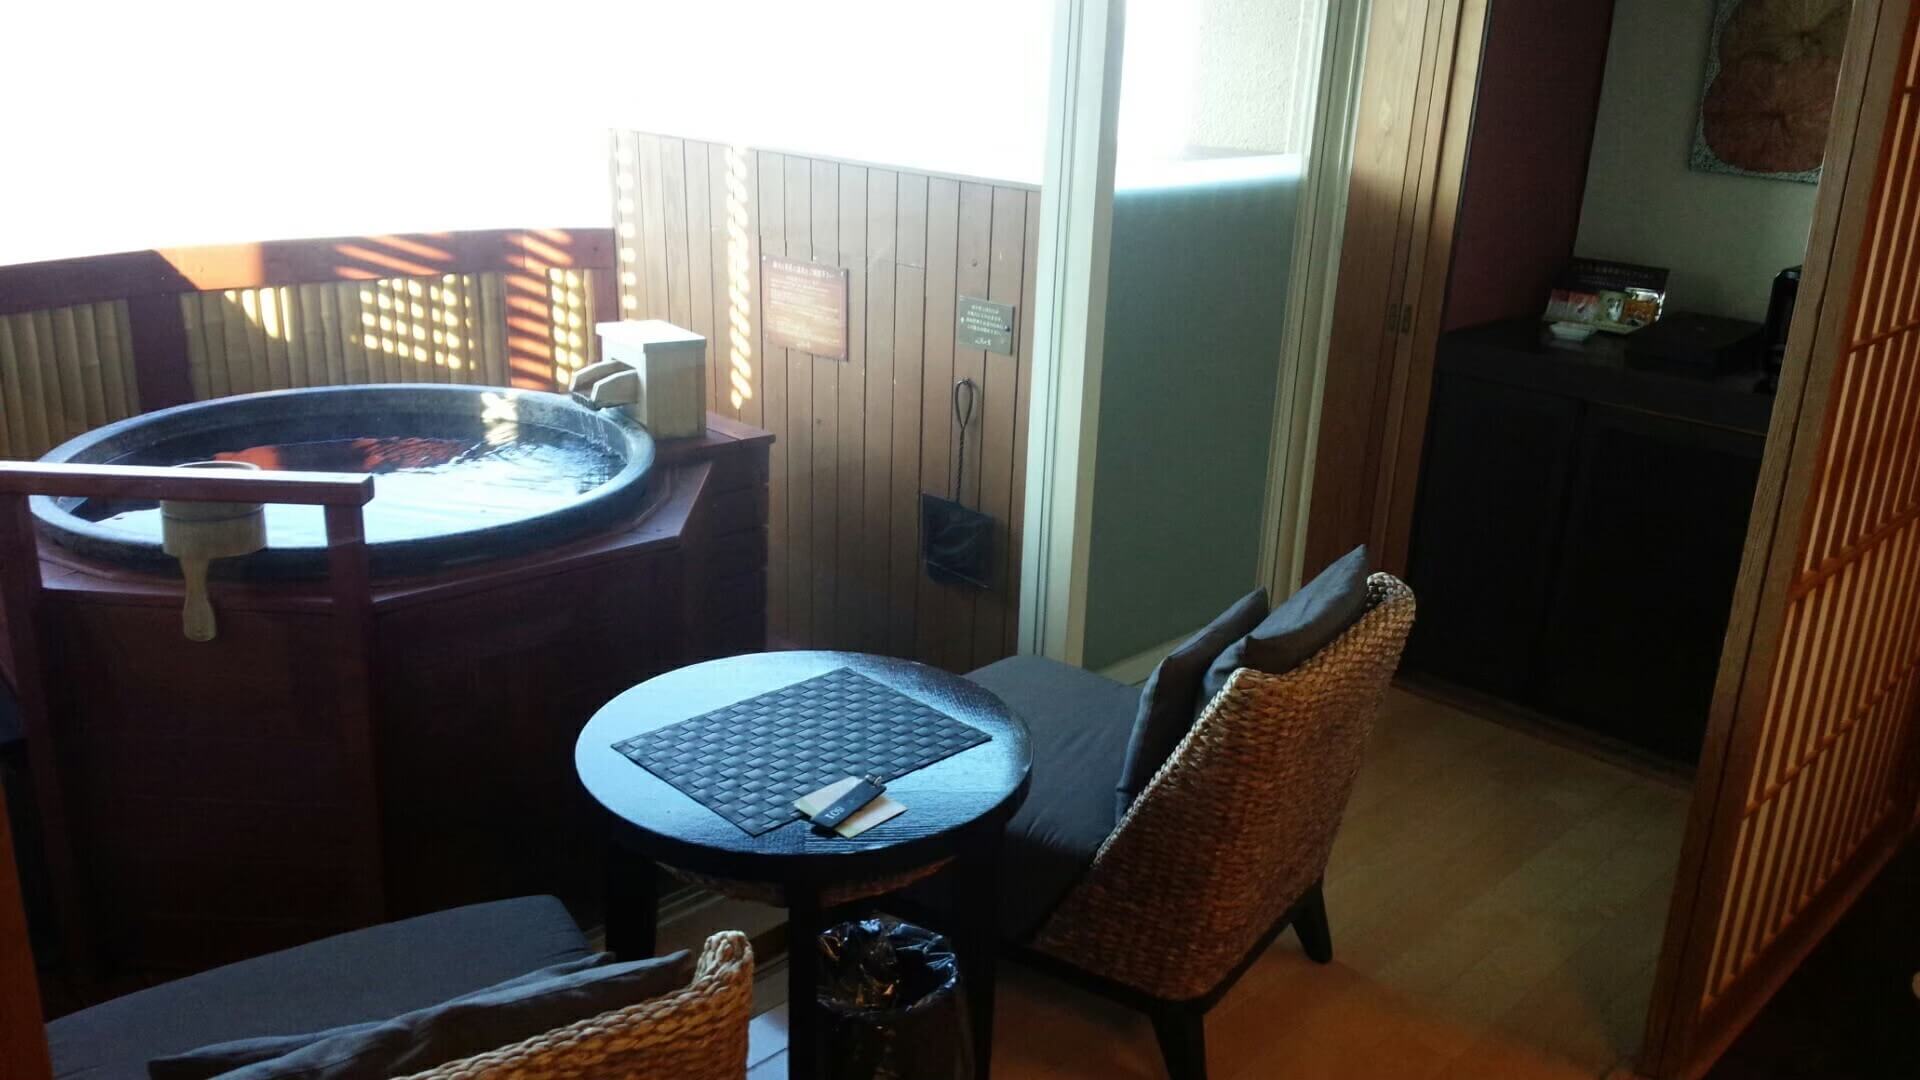 伊豆の高級旅館、風の薫の客室露天風呂(慶太ブログ)